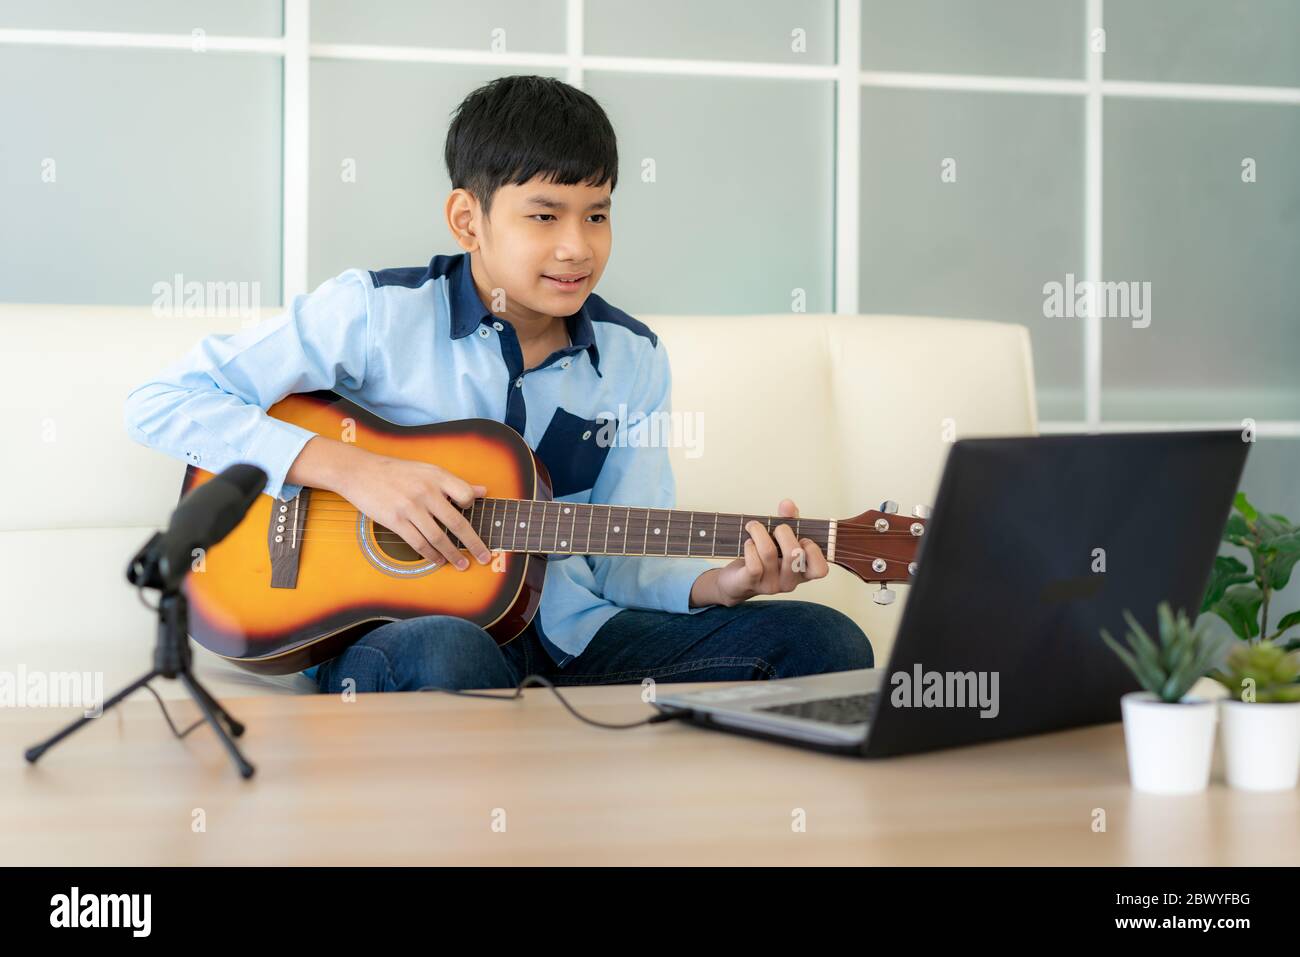 Asiatische junge spielen akustische Gitarre und beobachten Online-Kurs auf Laptop beim Üben zu Hause. Asiatische junge virtuelle Happy Hour Treffen für Musik spielen o Stockfoto